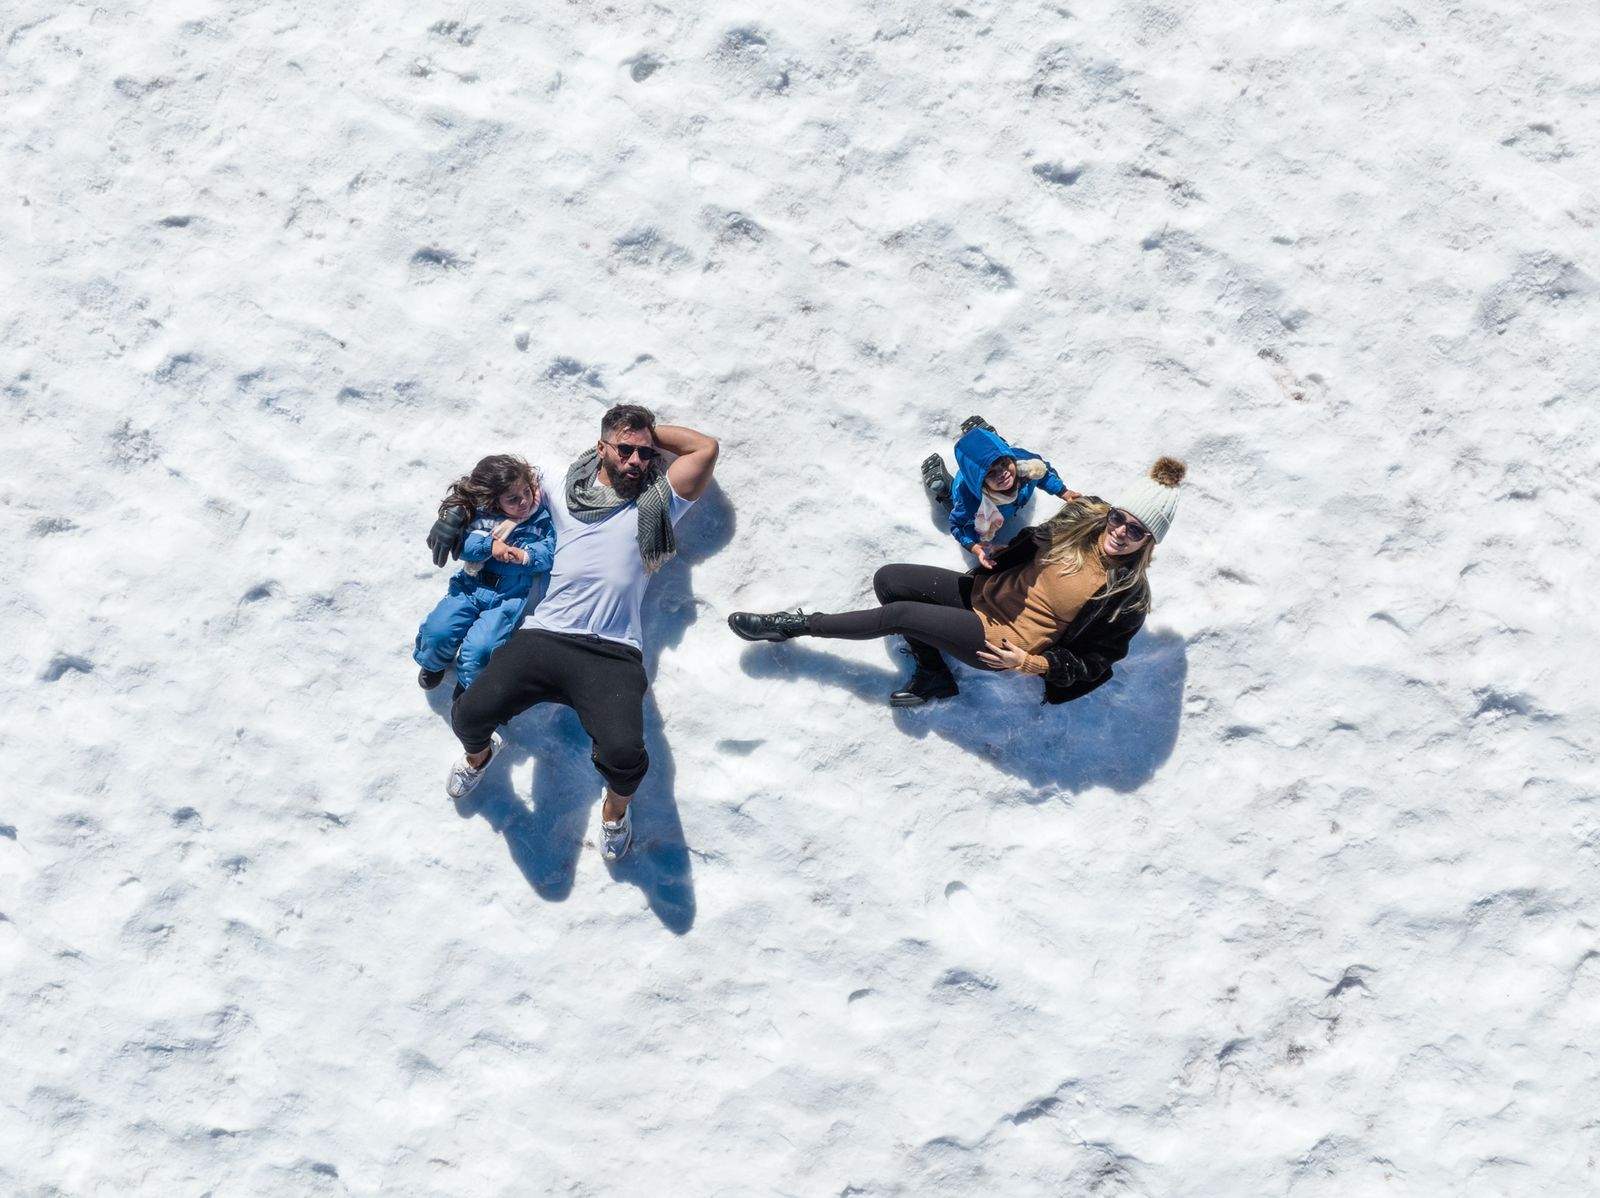 Jader Nogueira voyage avec sa famille, apparaît dans la neige et déclare : « Love »